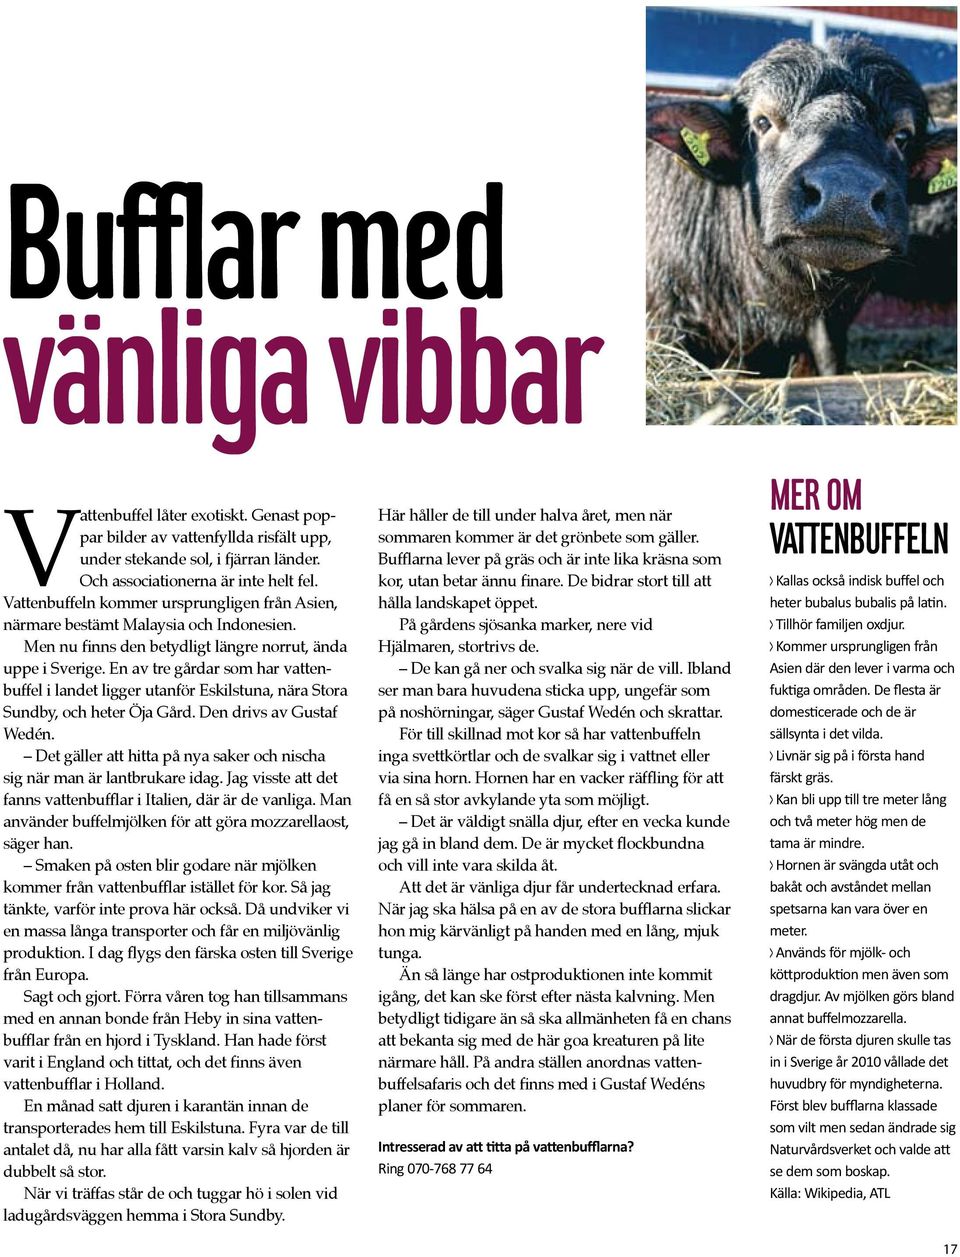 E av tre gårdar som har vattebuffel i ladet ligger utaför Eskilstua, ära Stora Sudby, och heter Öja Gård. De drivs av Gustaf Wedé.